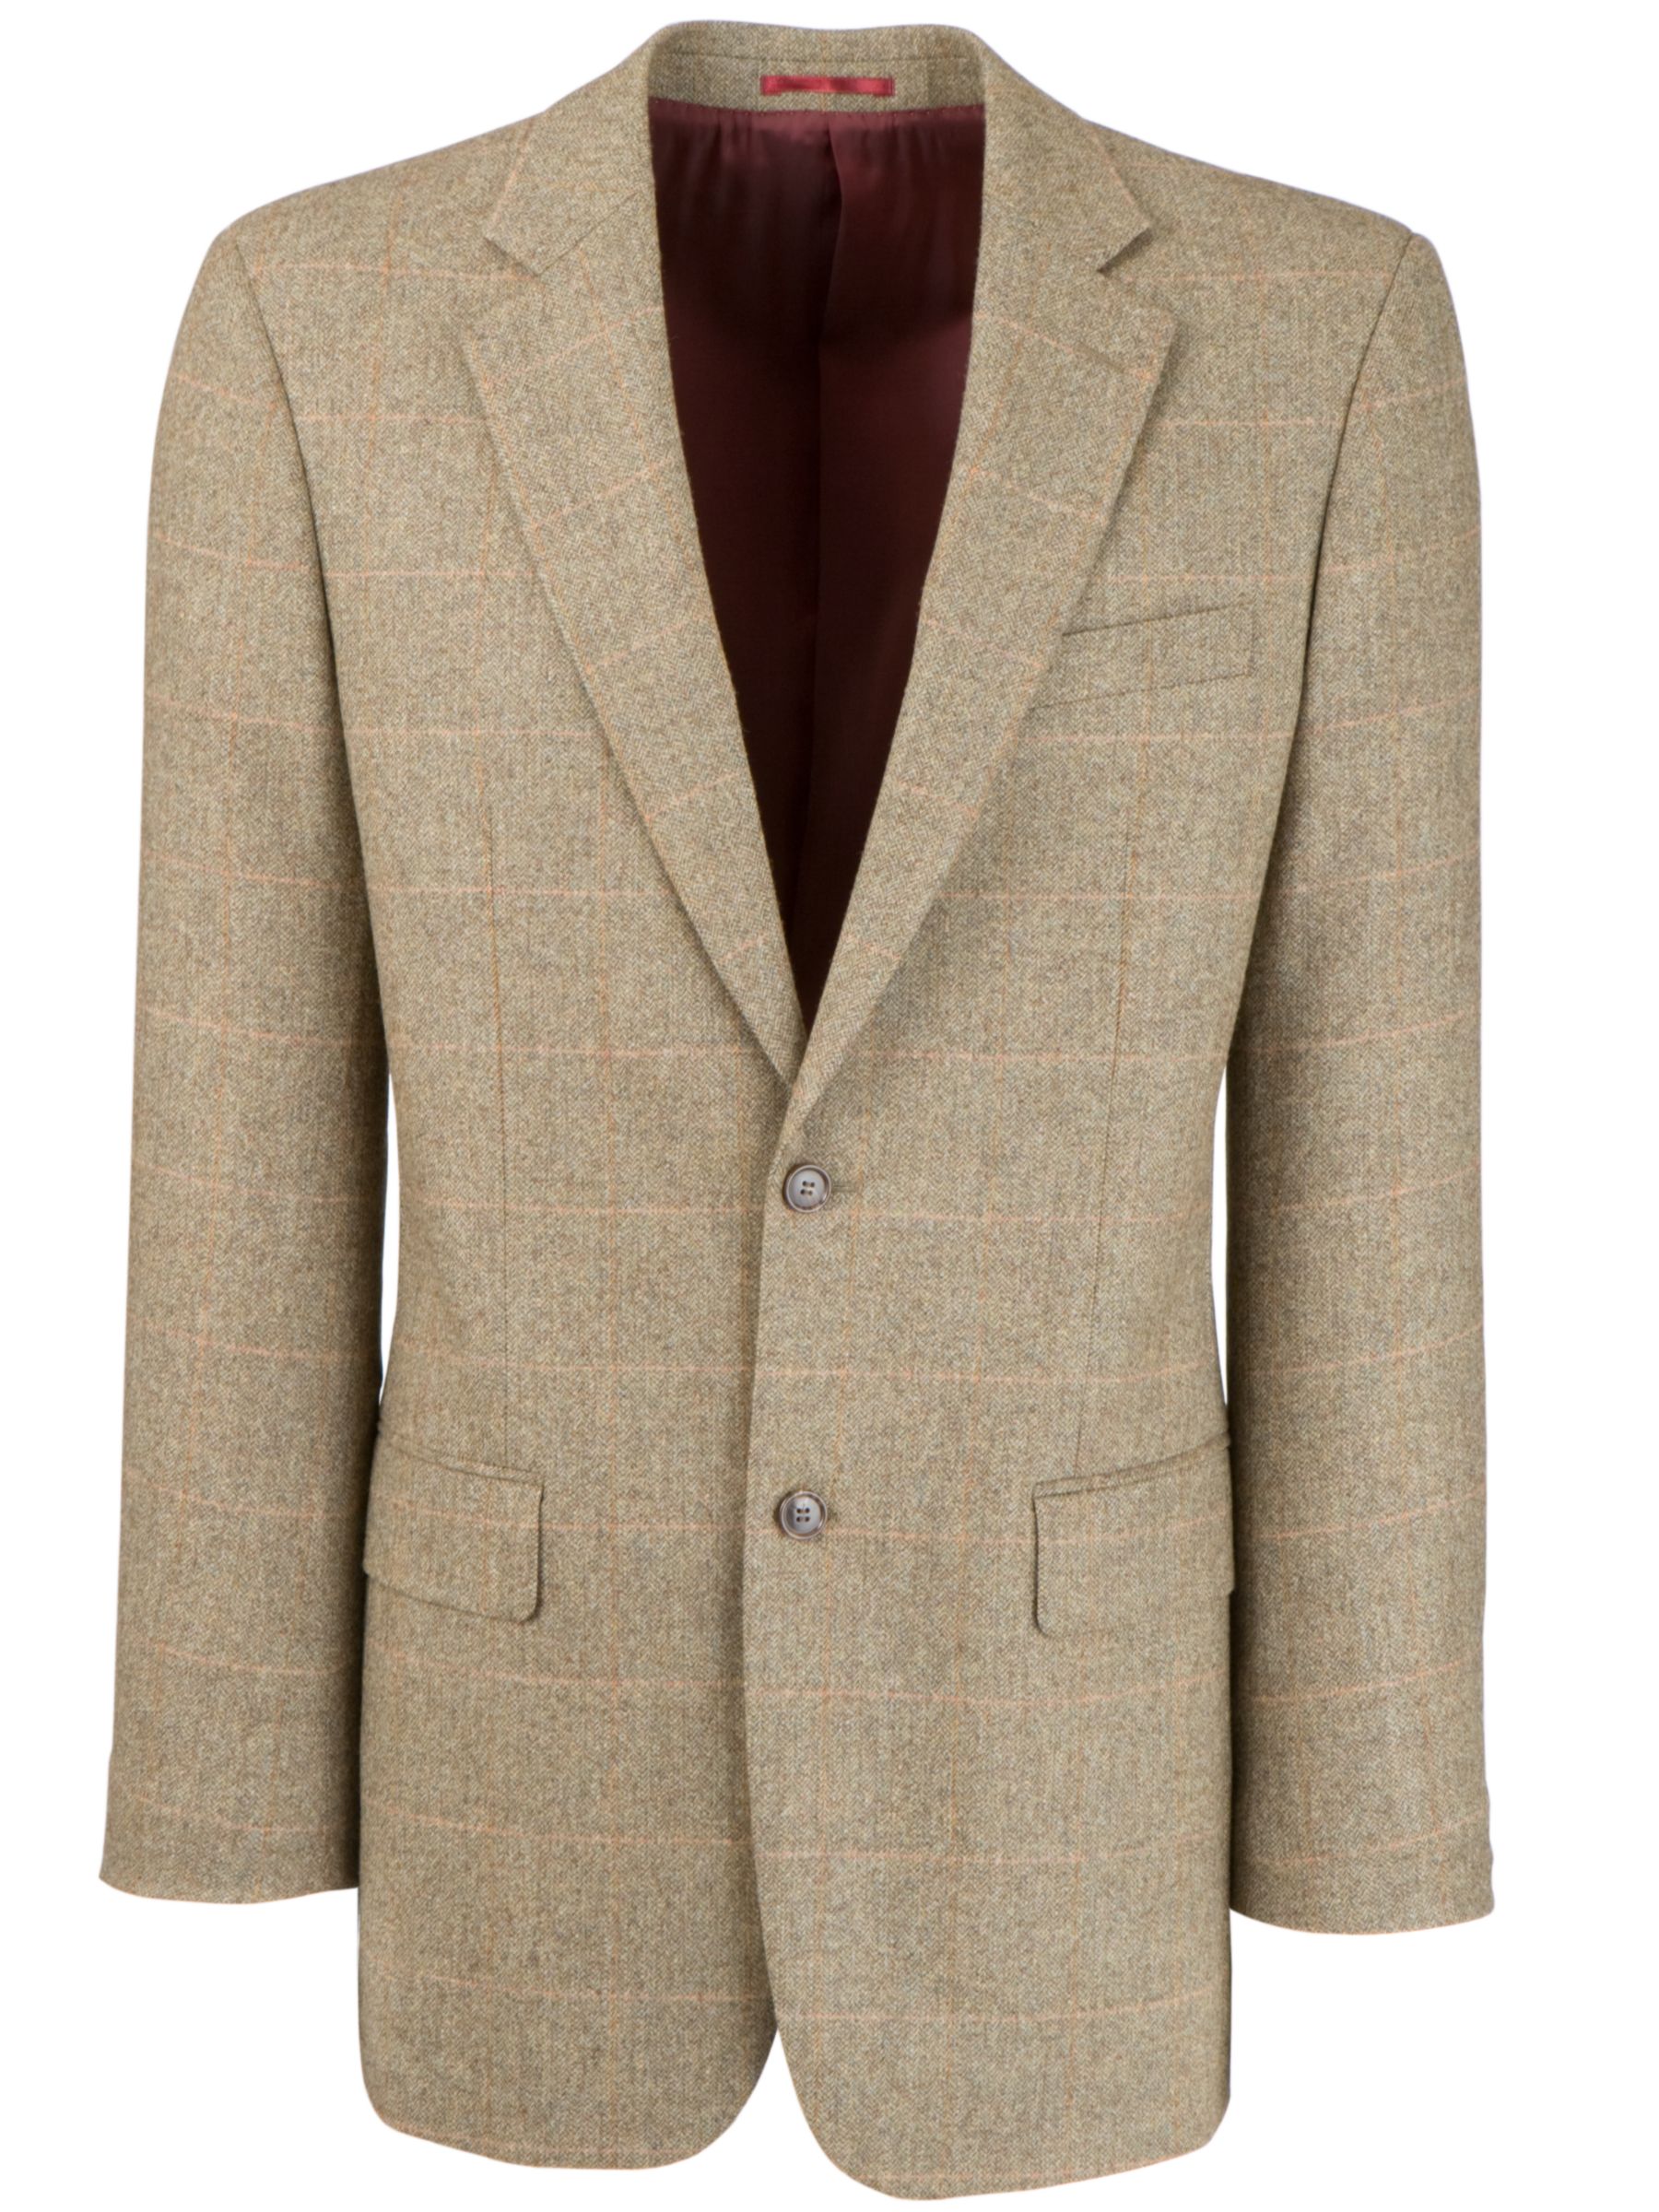 John Lewis Wool & Cashmere English Jacket, Brown/orange at John Lewis